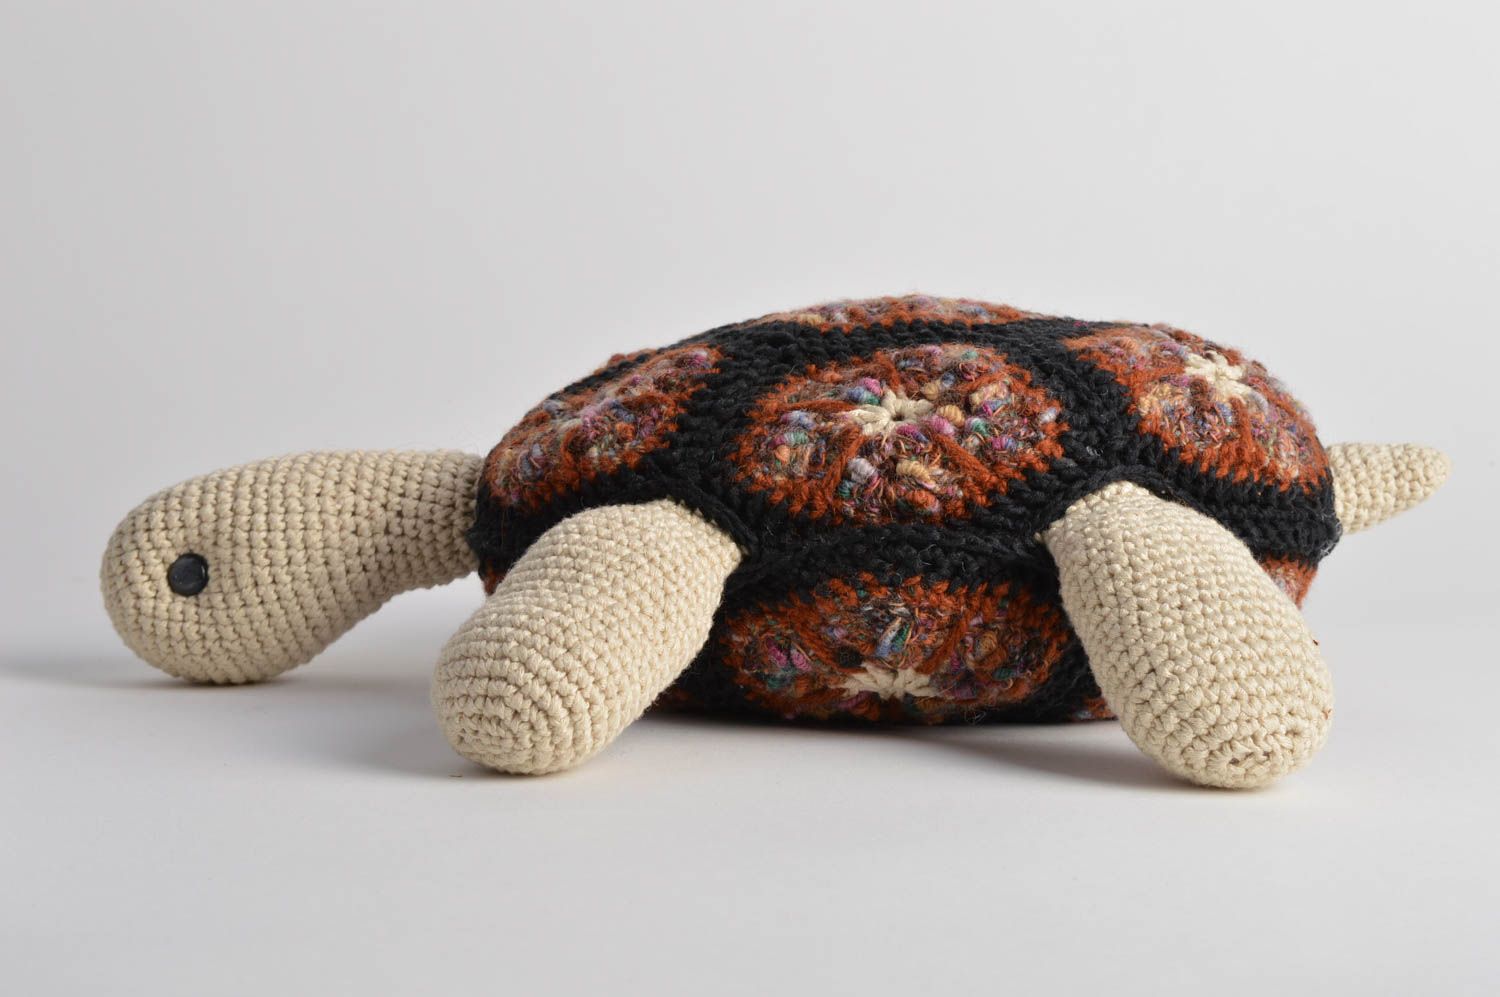 Мягкая оригинальная игрушка подушка для детей в виде черепахи вязаная крючком фото 5